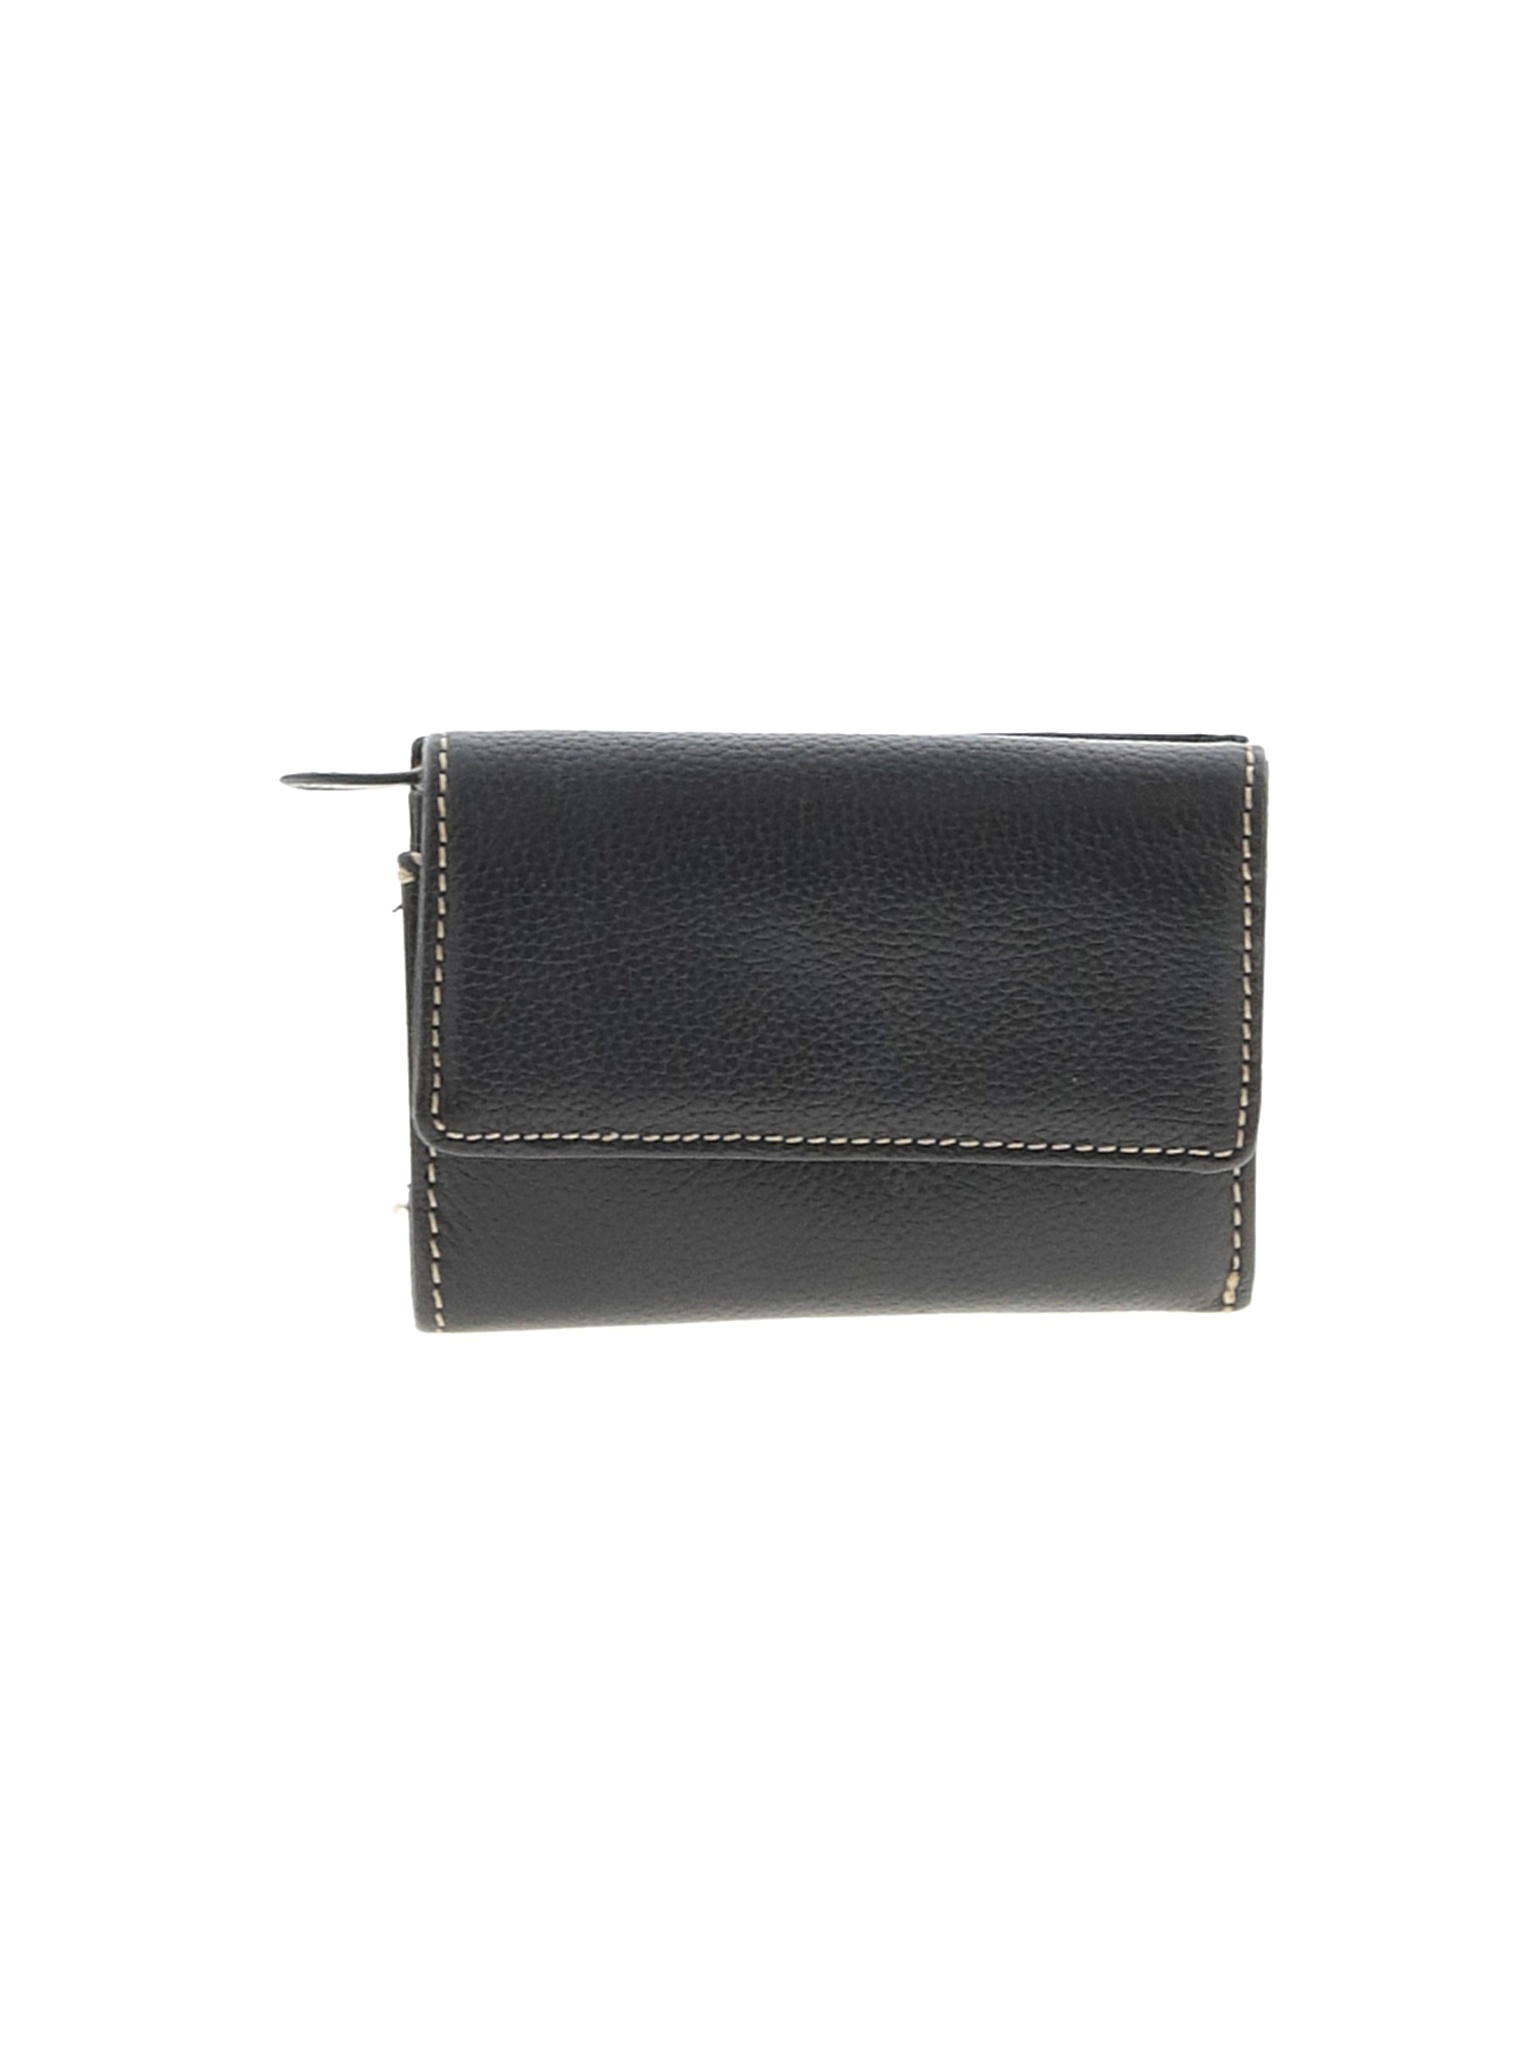 Safe Keeper Women Black Leather Wallet One Size | eBay